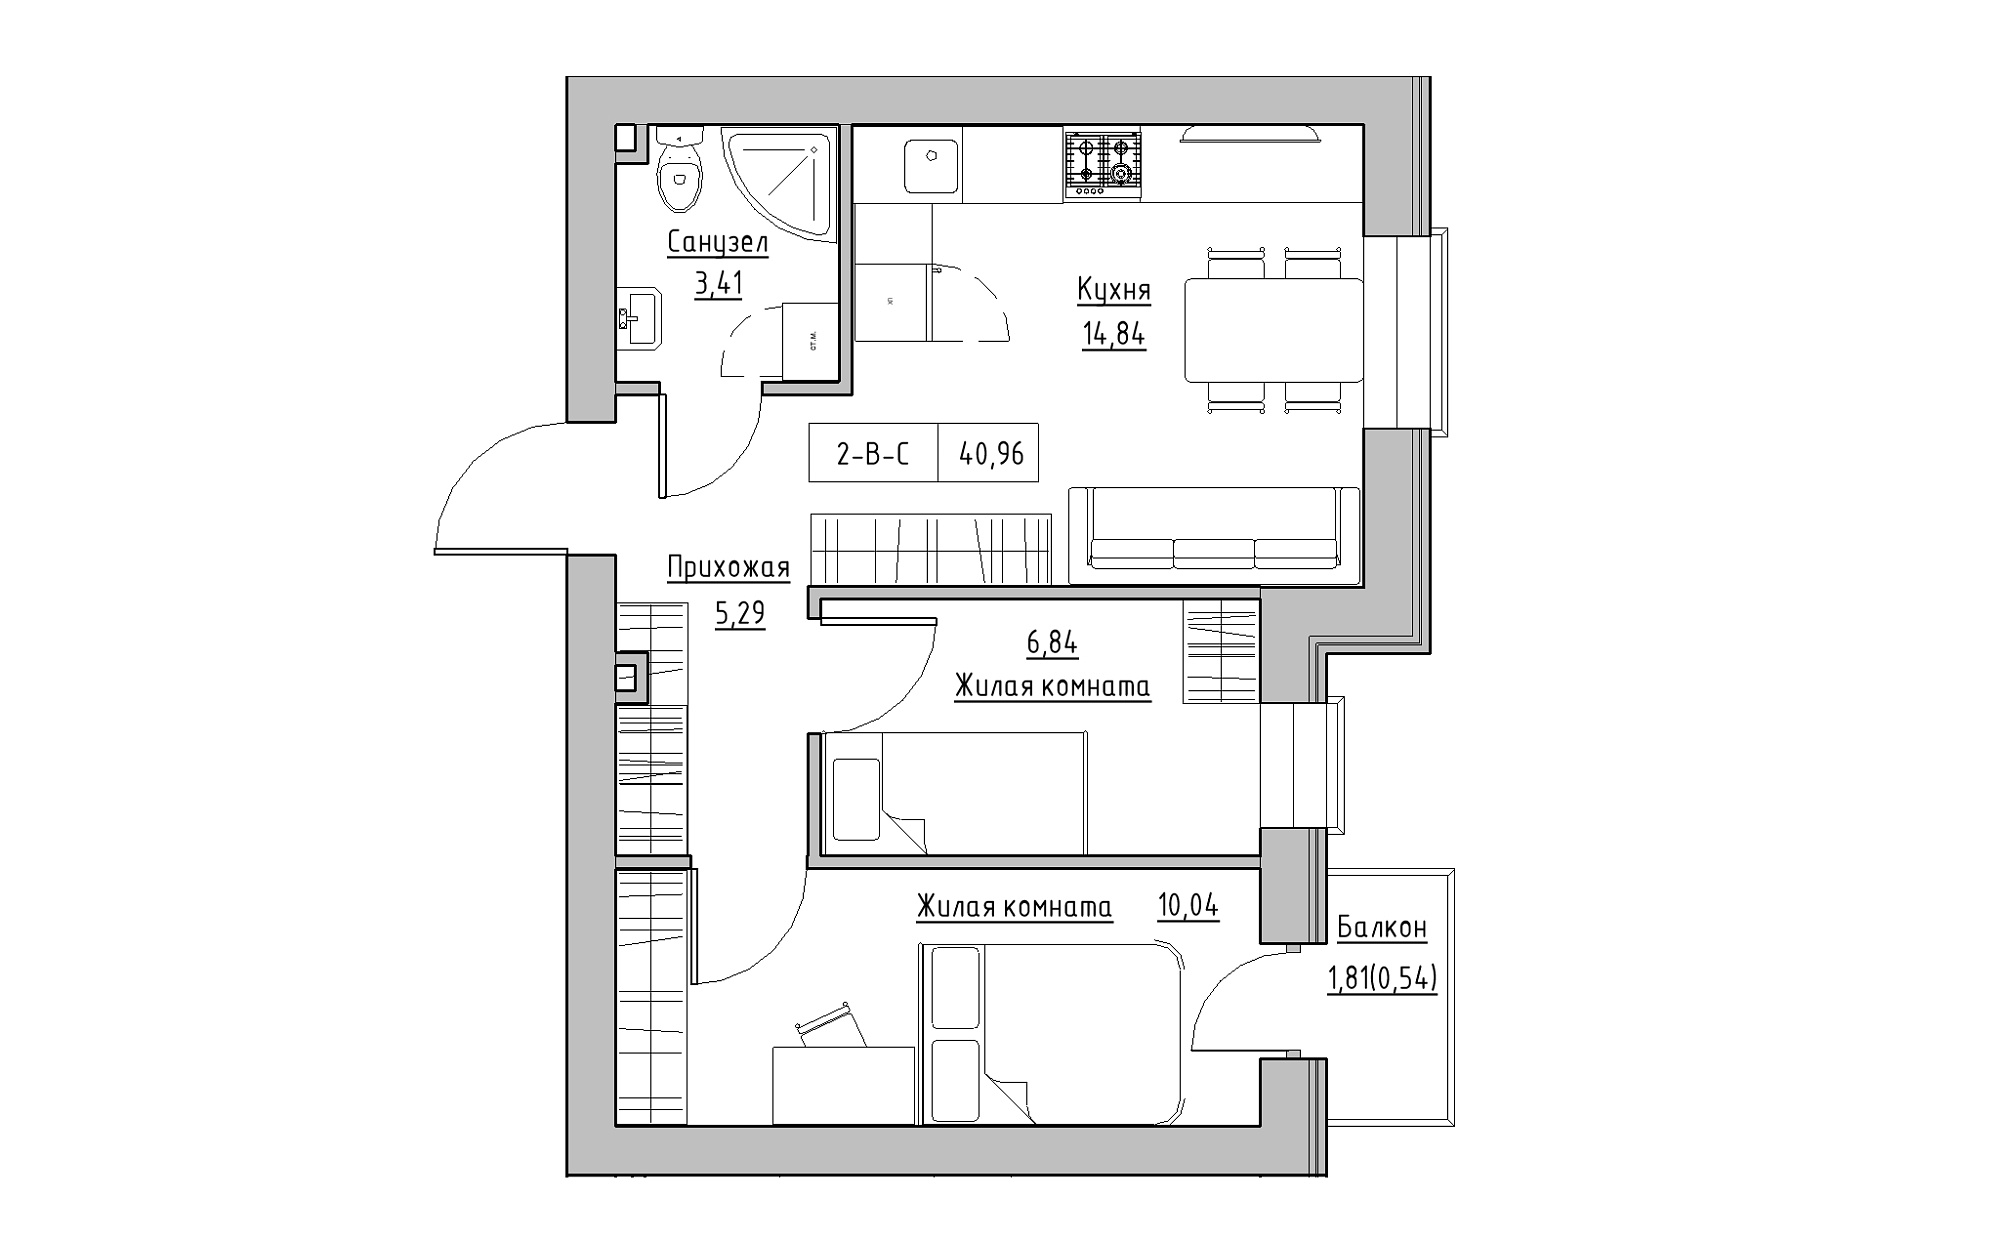 Планировка 2-к квартира площей 40.96м2, KS-022-03/0010.